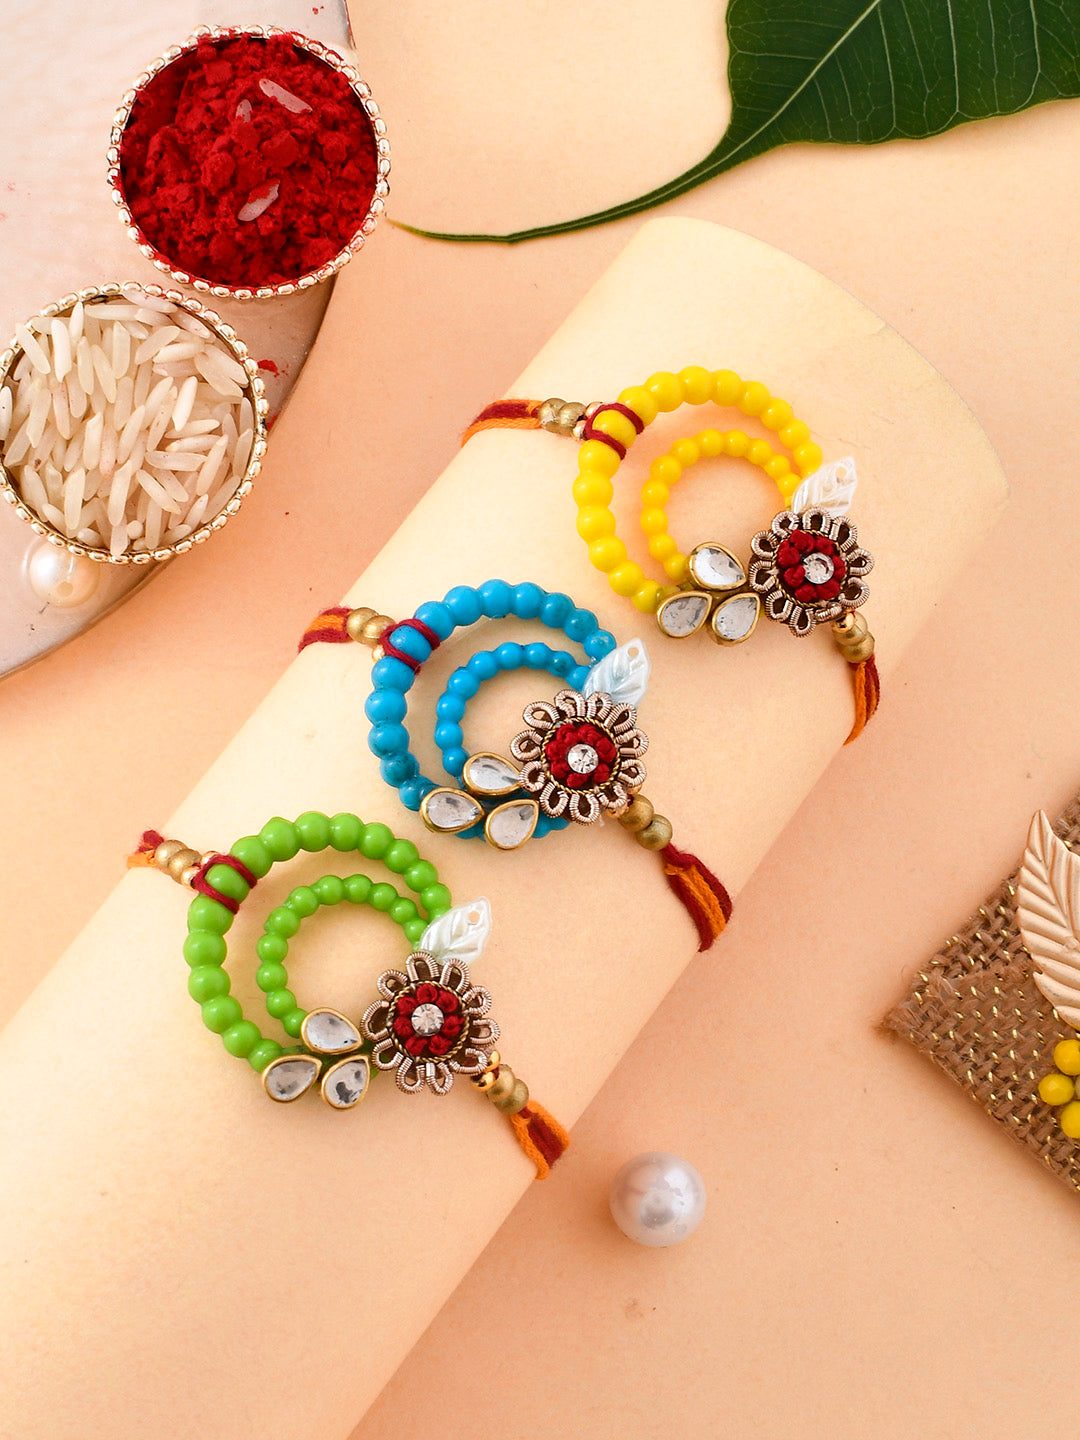 Circular Design Beads Vibrant Rakhi Set of Three - Only Rakhi (PST2356_3)